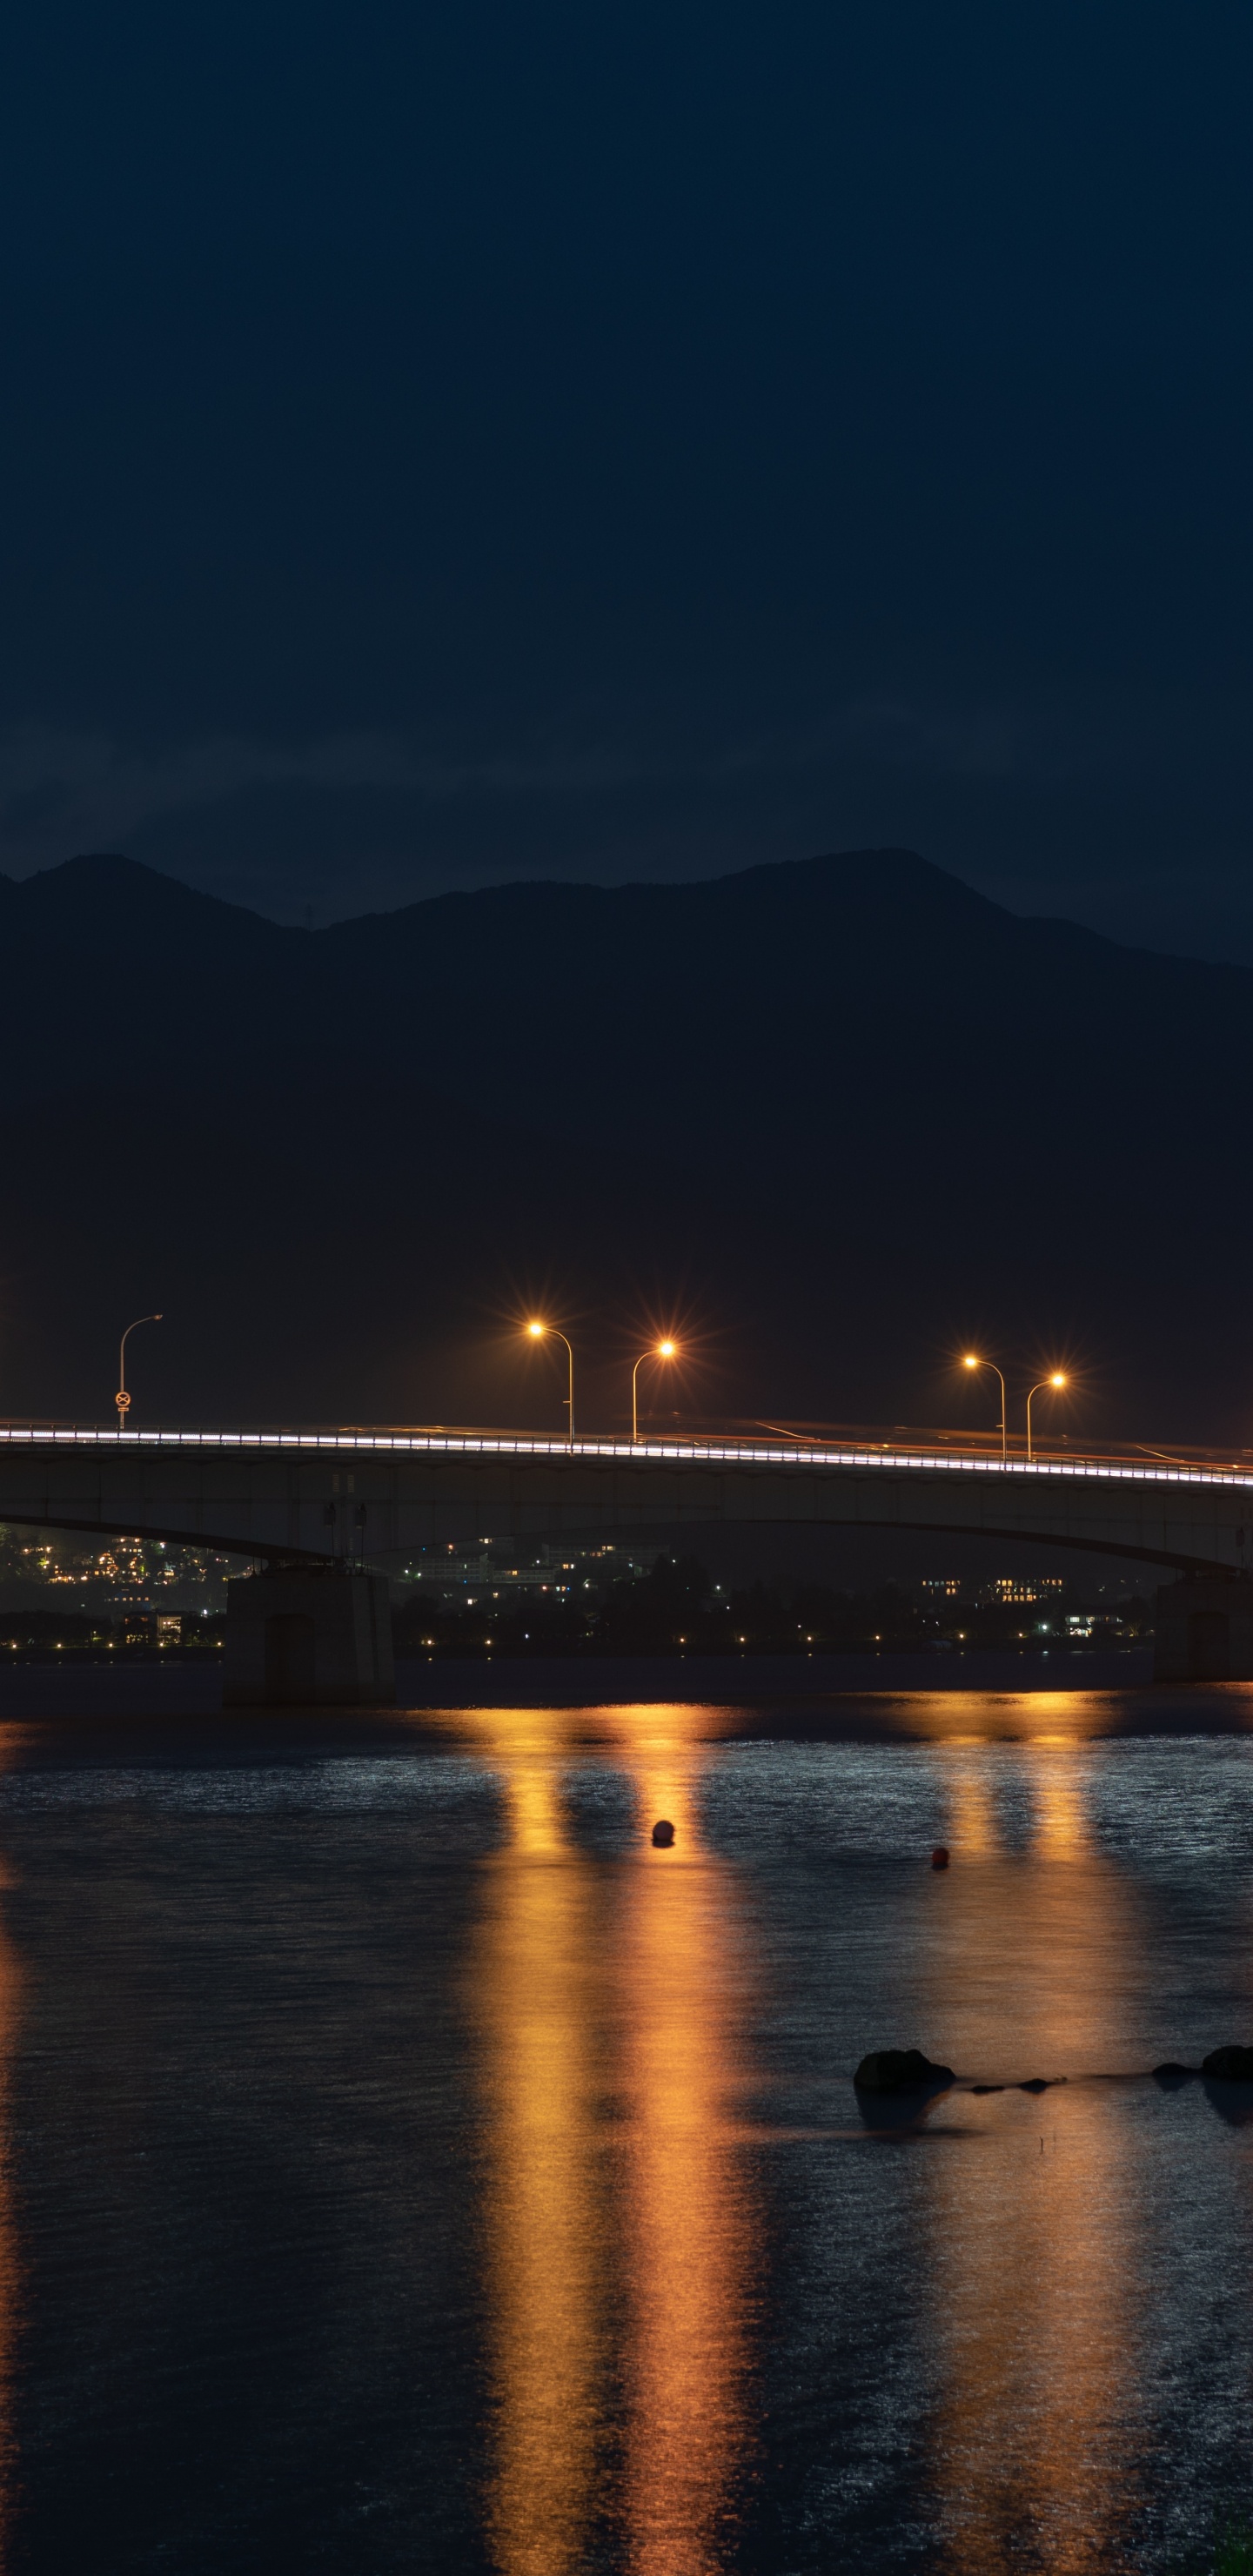 Puente Iluminado Sobre el Agua Durante la Noche. Wallpaper in 1440x2960 Resolution